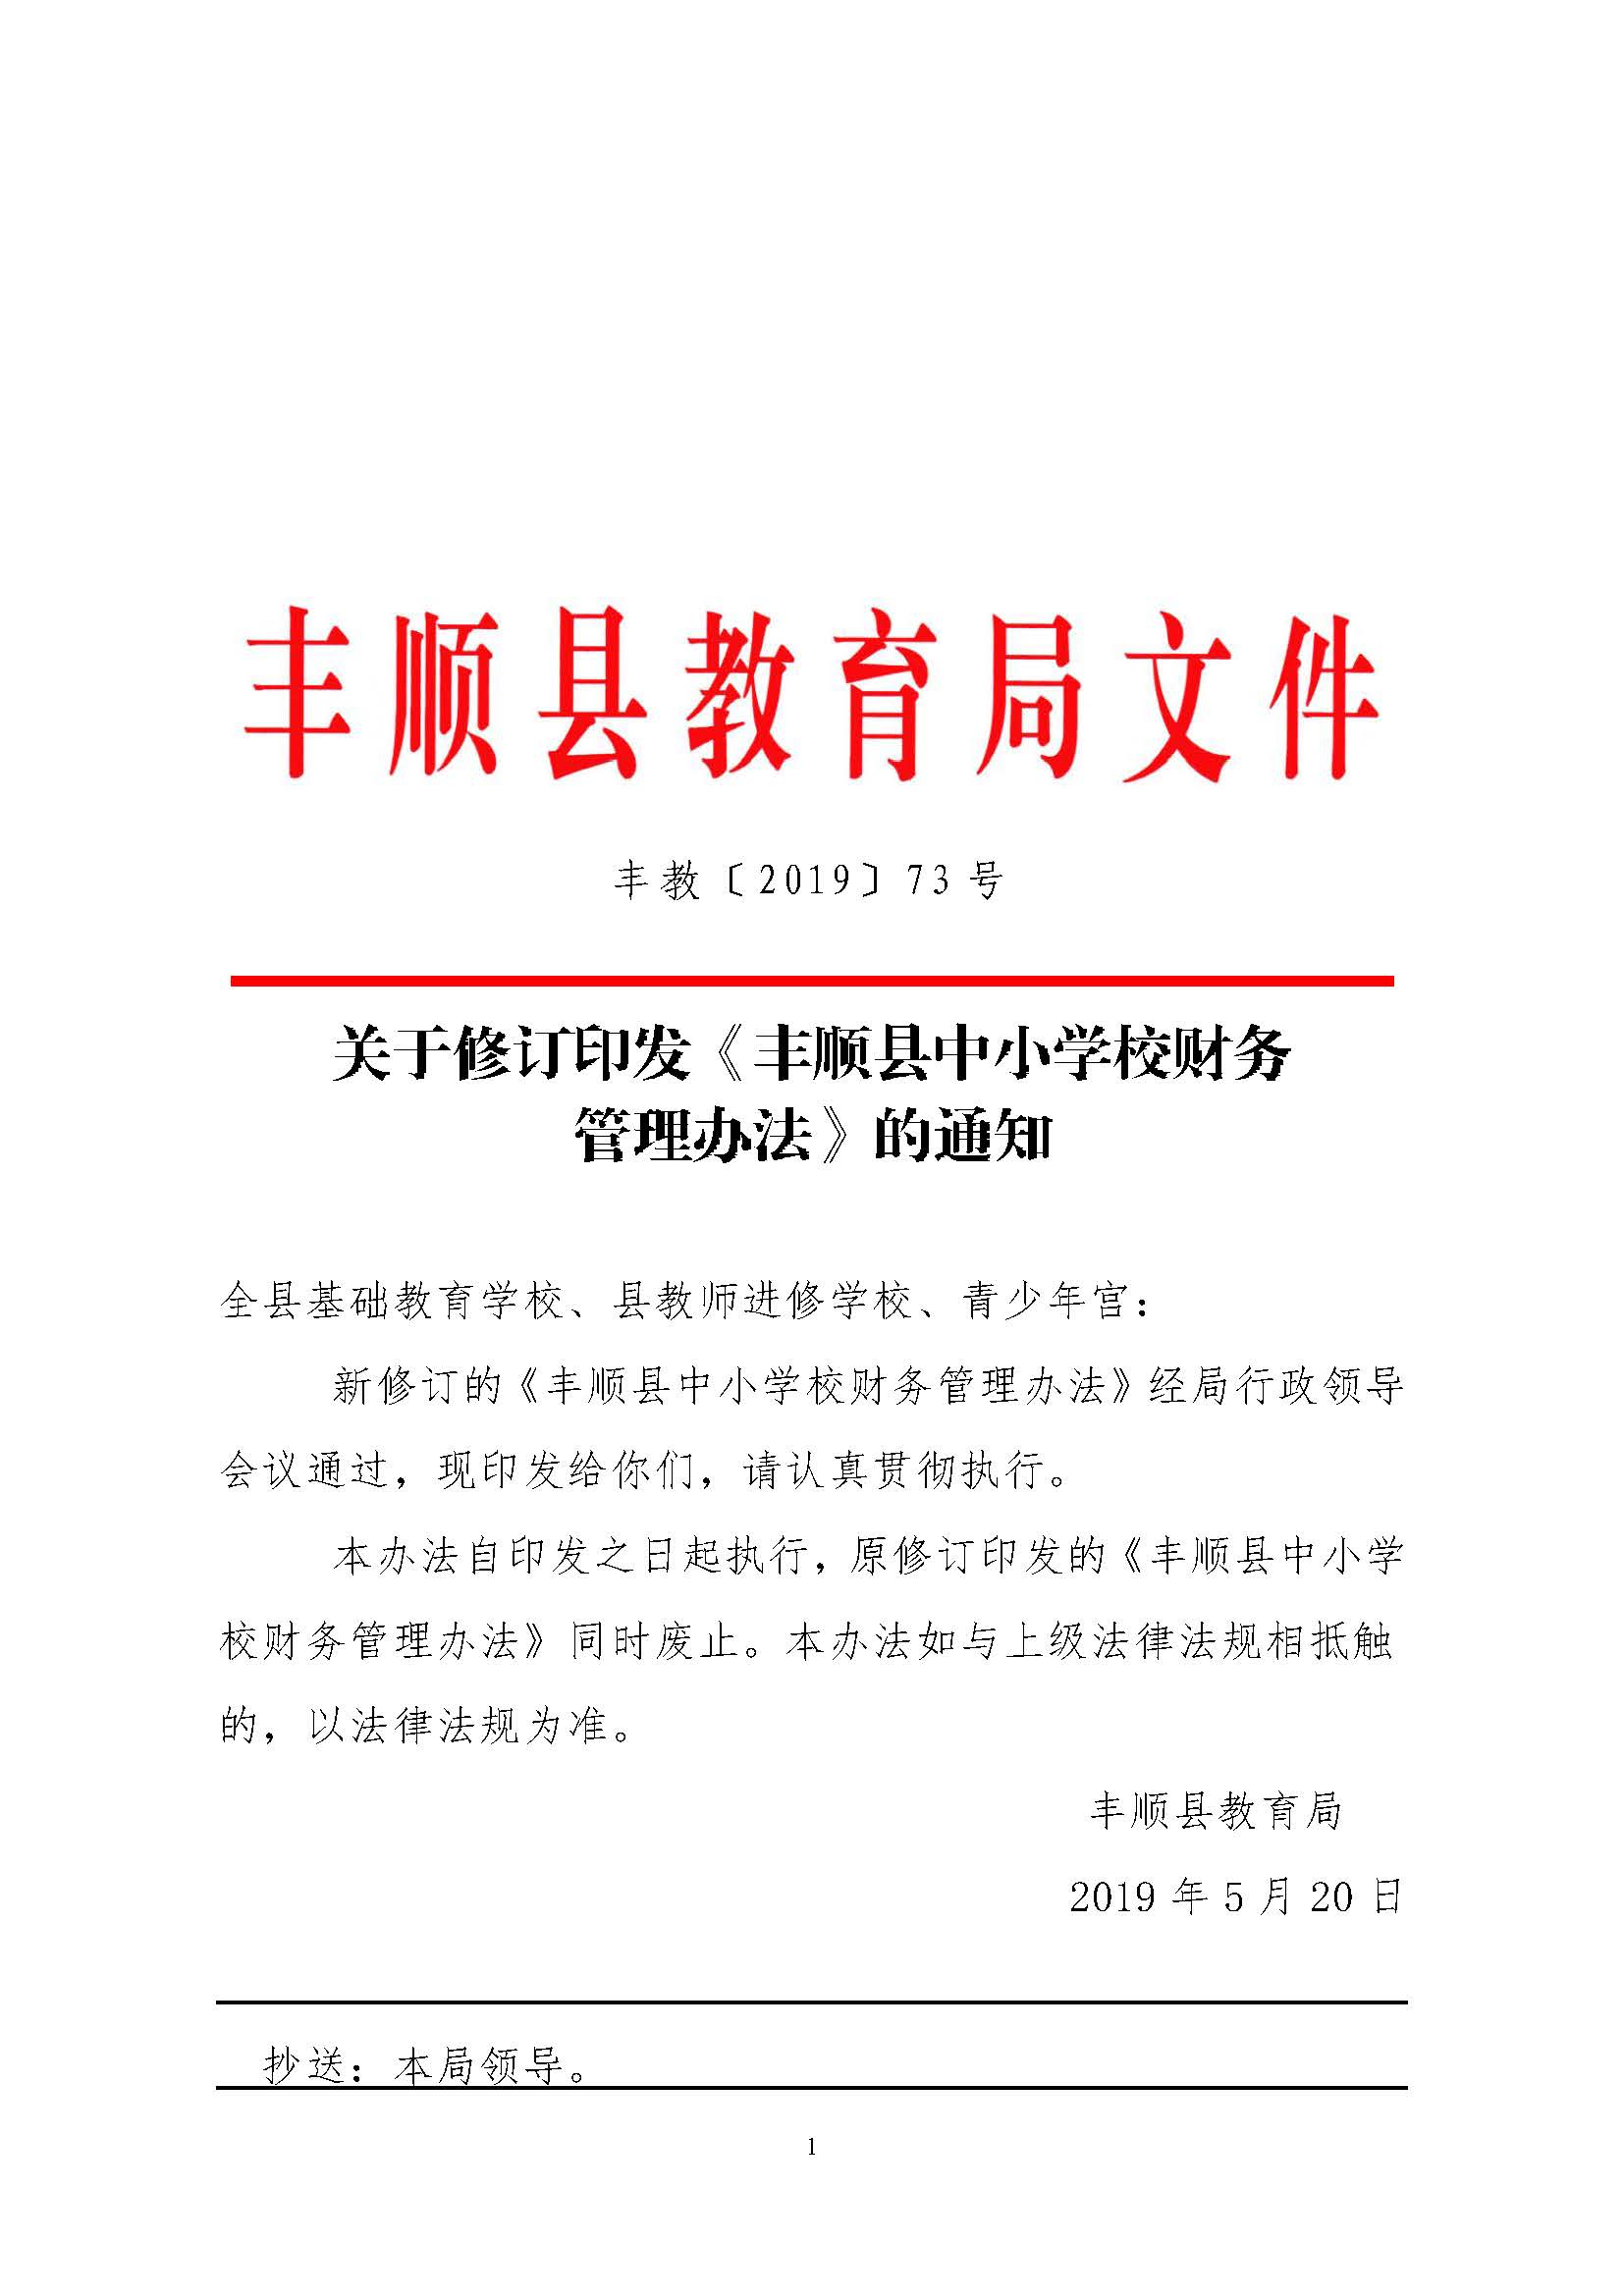 关于修订印发《丰顺县中小学校财务管理办法》的通知-正文.jpg